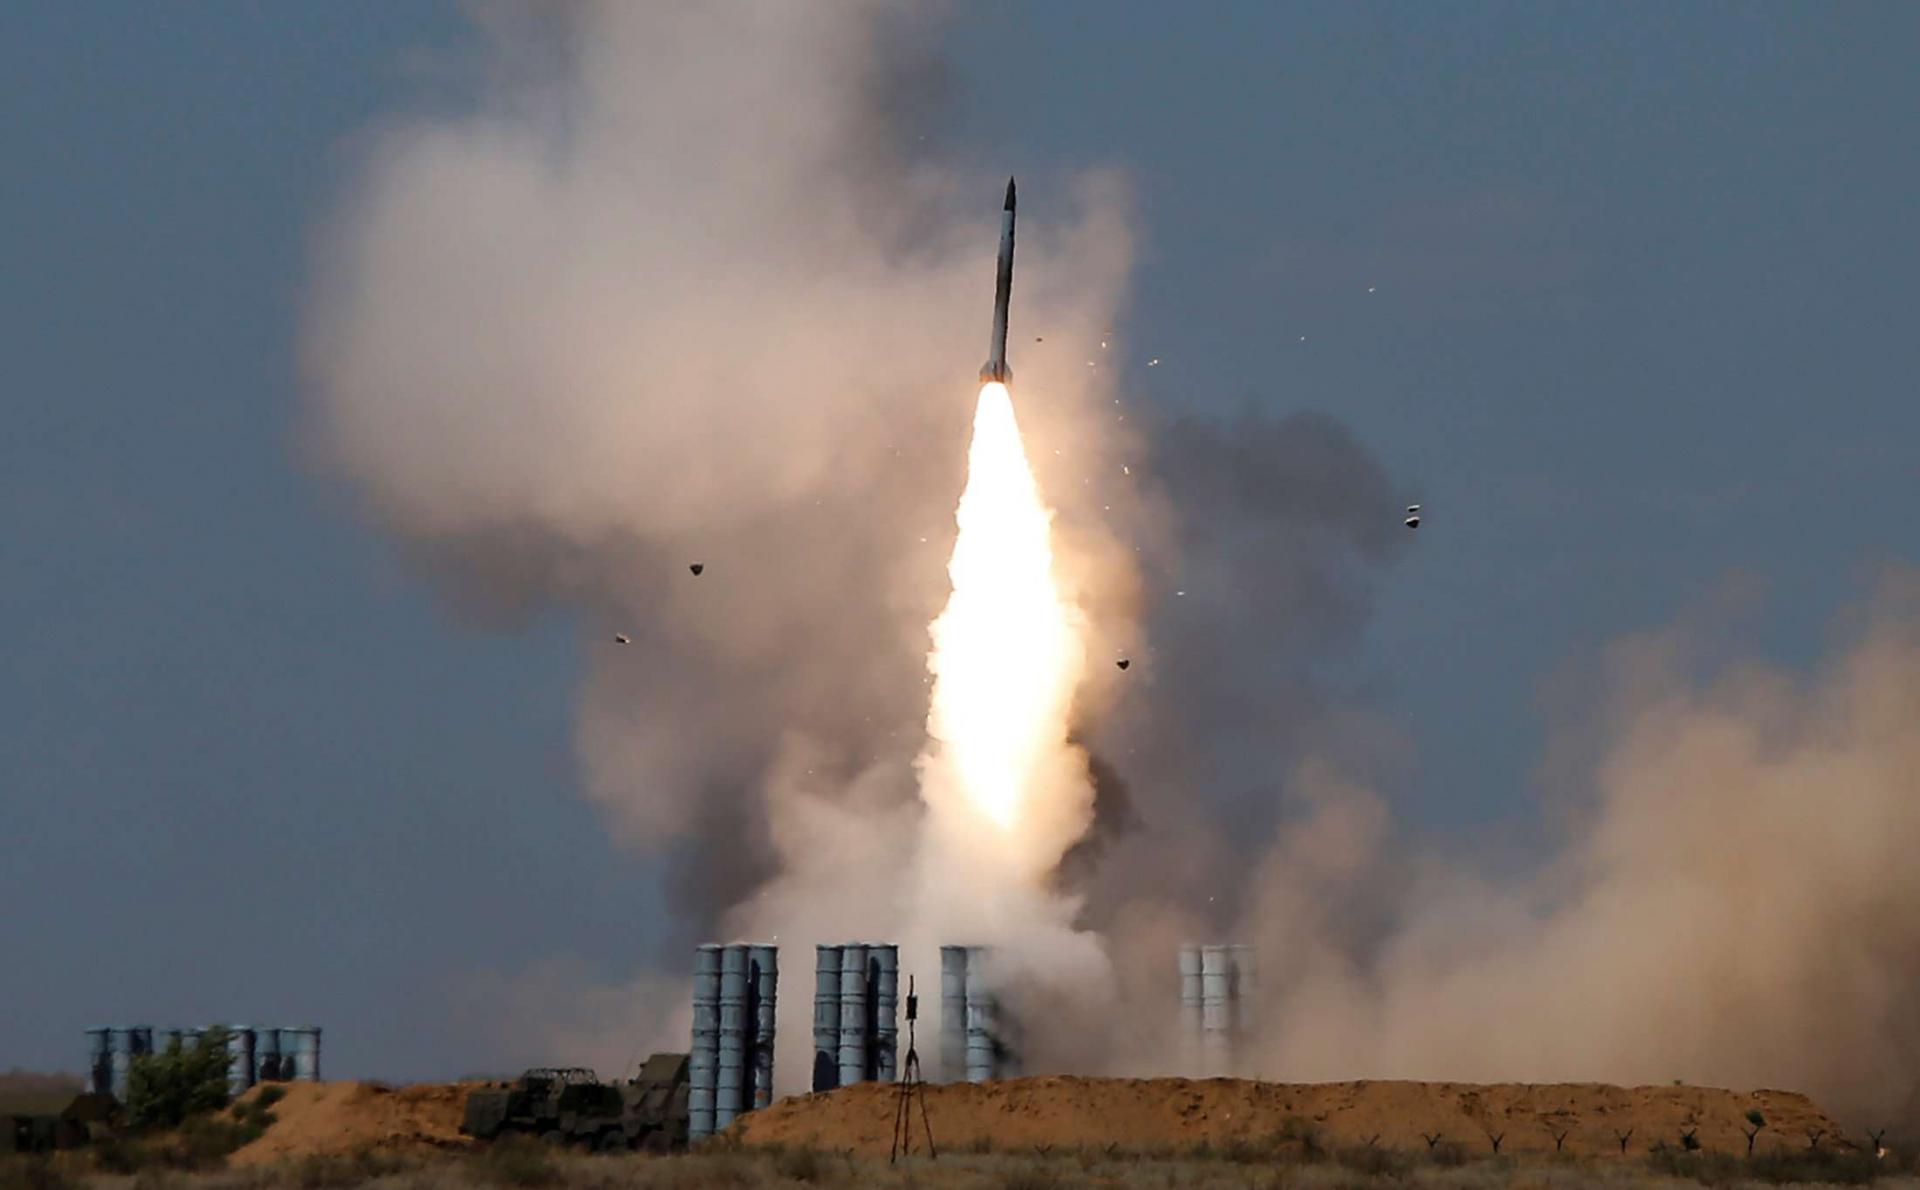 بوتين يتحدث عن "دور ضخم" للصواريخ في مسار الحروب